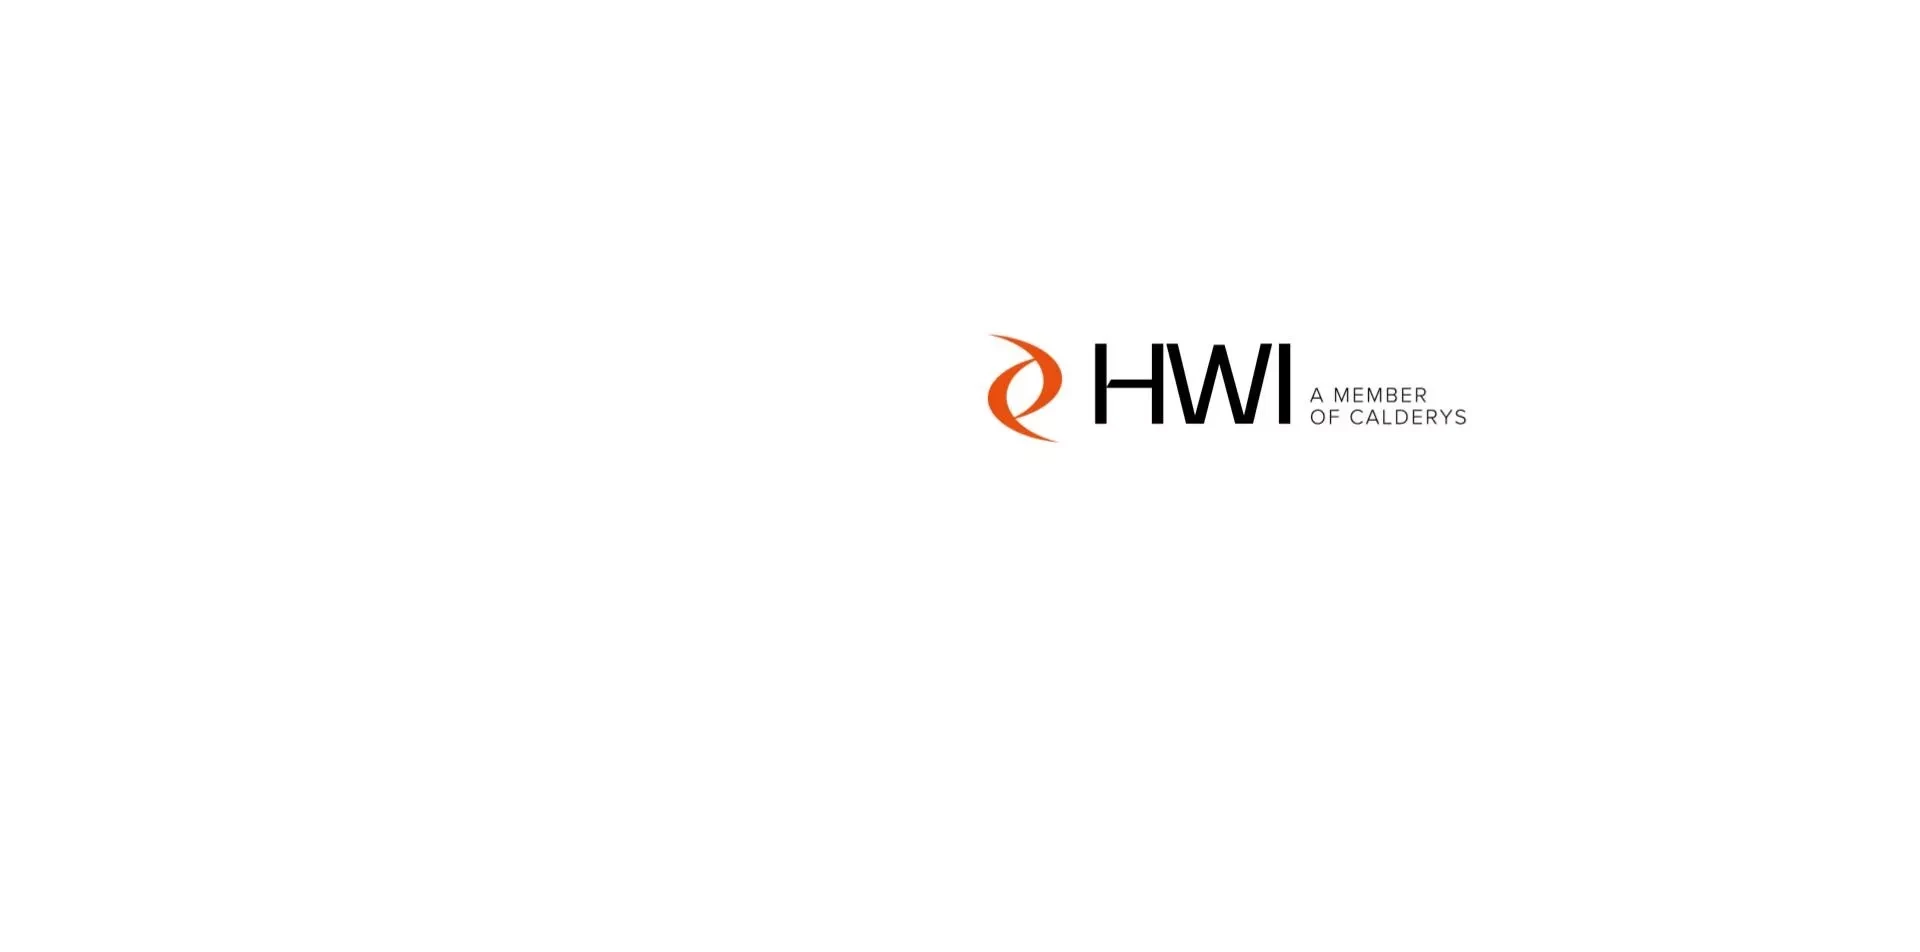 HWI new logo